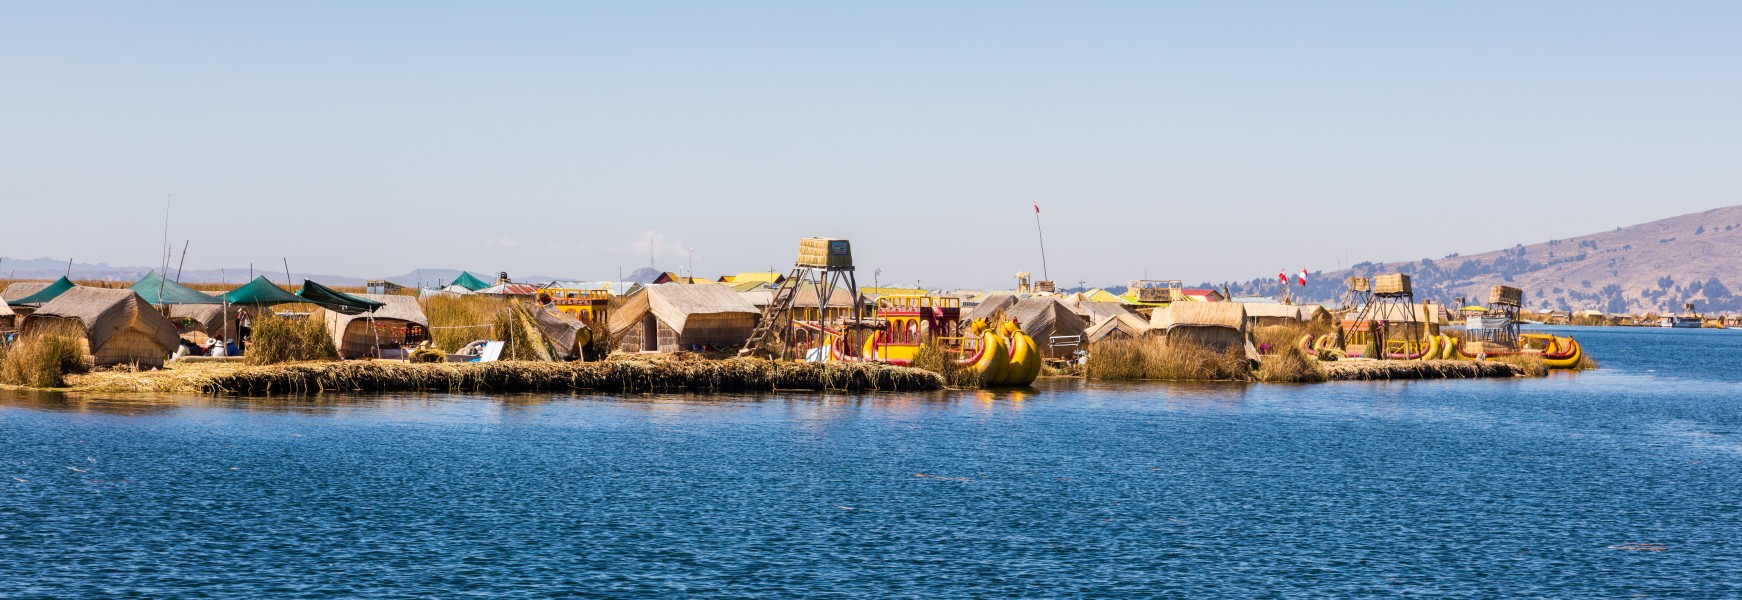 Islas flotantes de los Uros, Lago Titicaca, Perú, 2015-08-01, DD 24